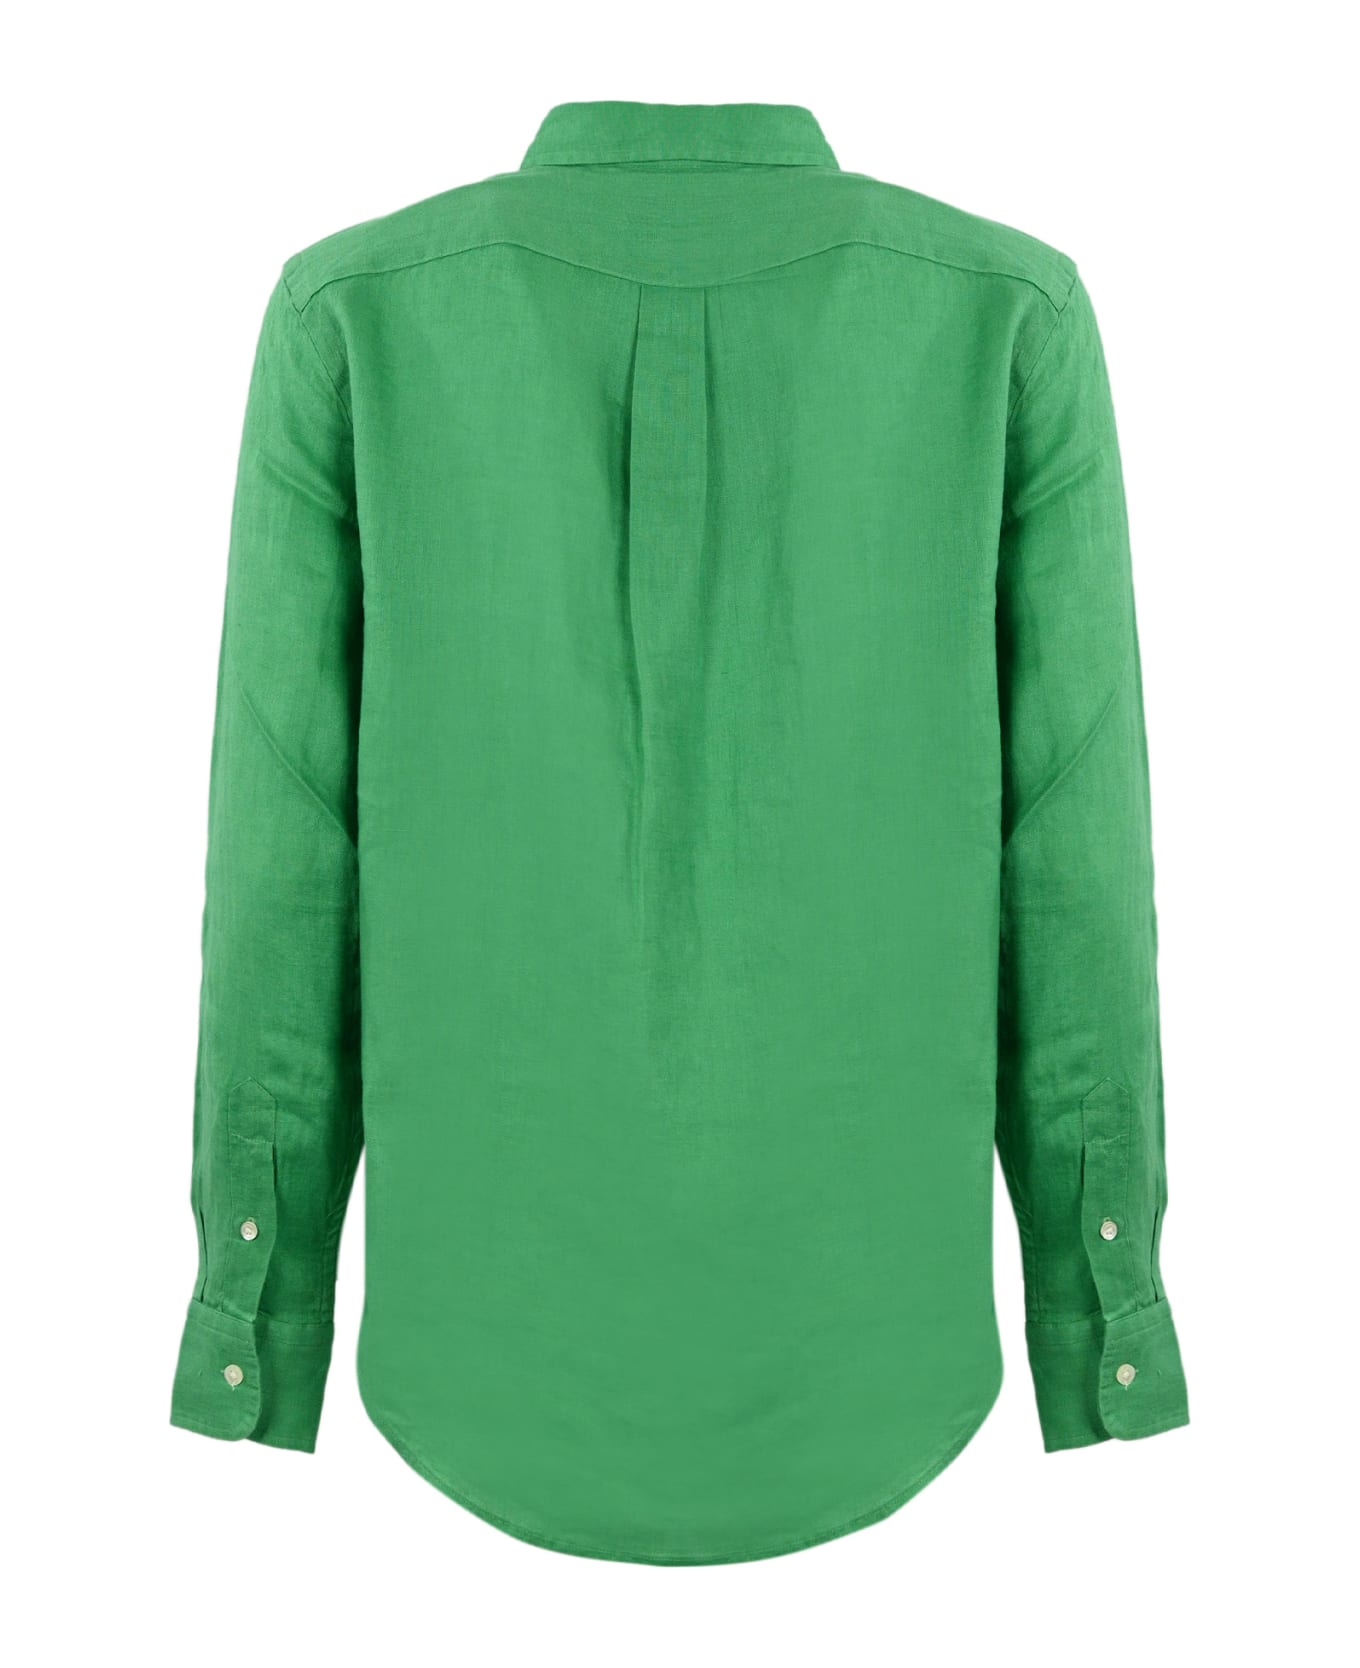 Polo Ralph Lauren Shirt - VINEYARD GREEN